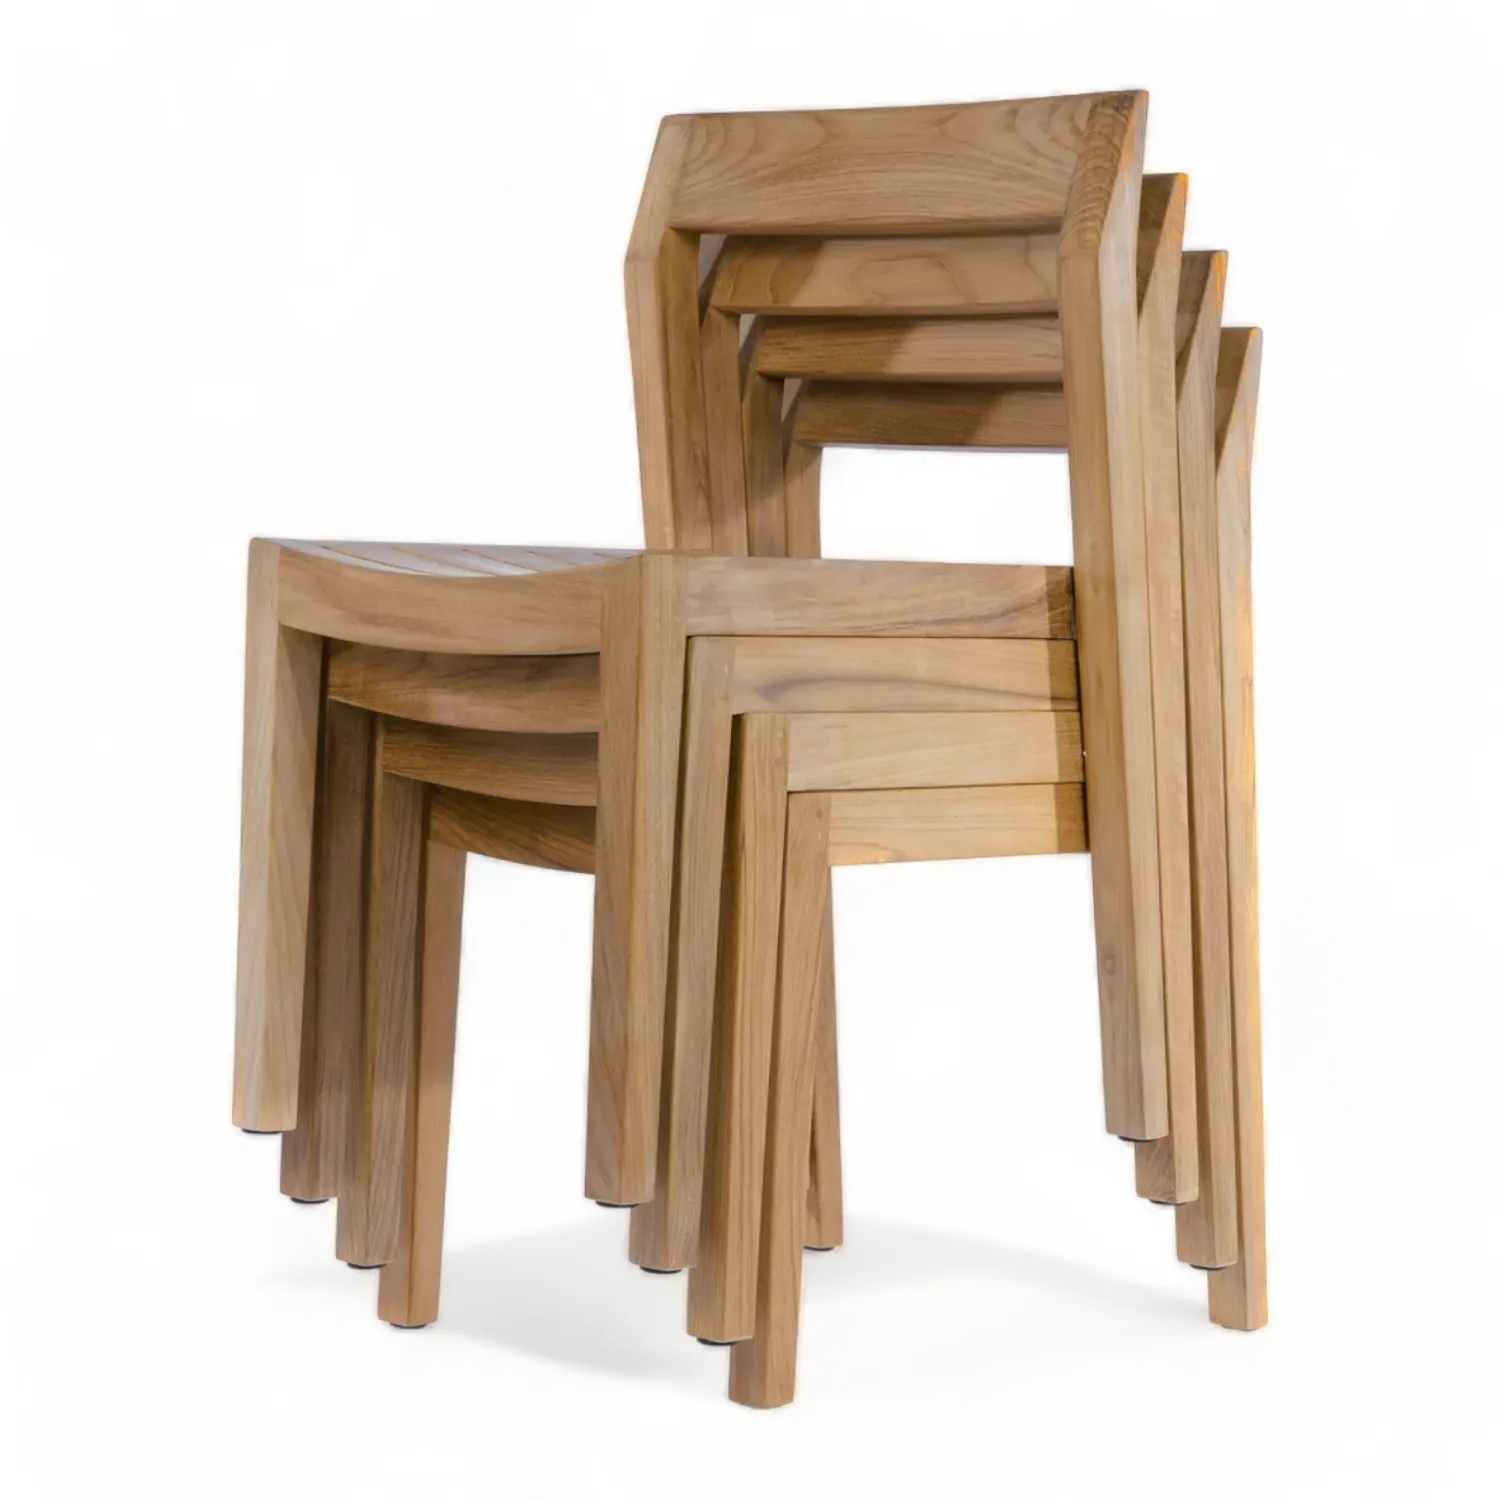 ריהוט ביתי מודרני כיסא אוכל מעץ מלא מושב עץ טיק ריהוט עץ עץ כסאות פינת אוכל ערימה כסאות אוכל מעץ טיק